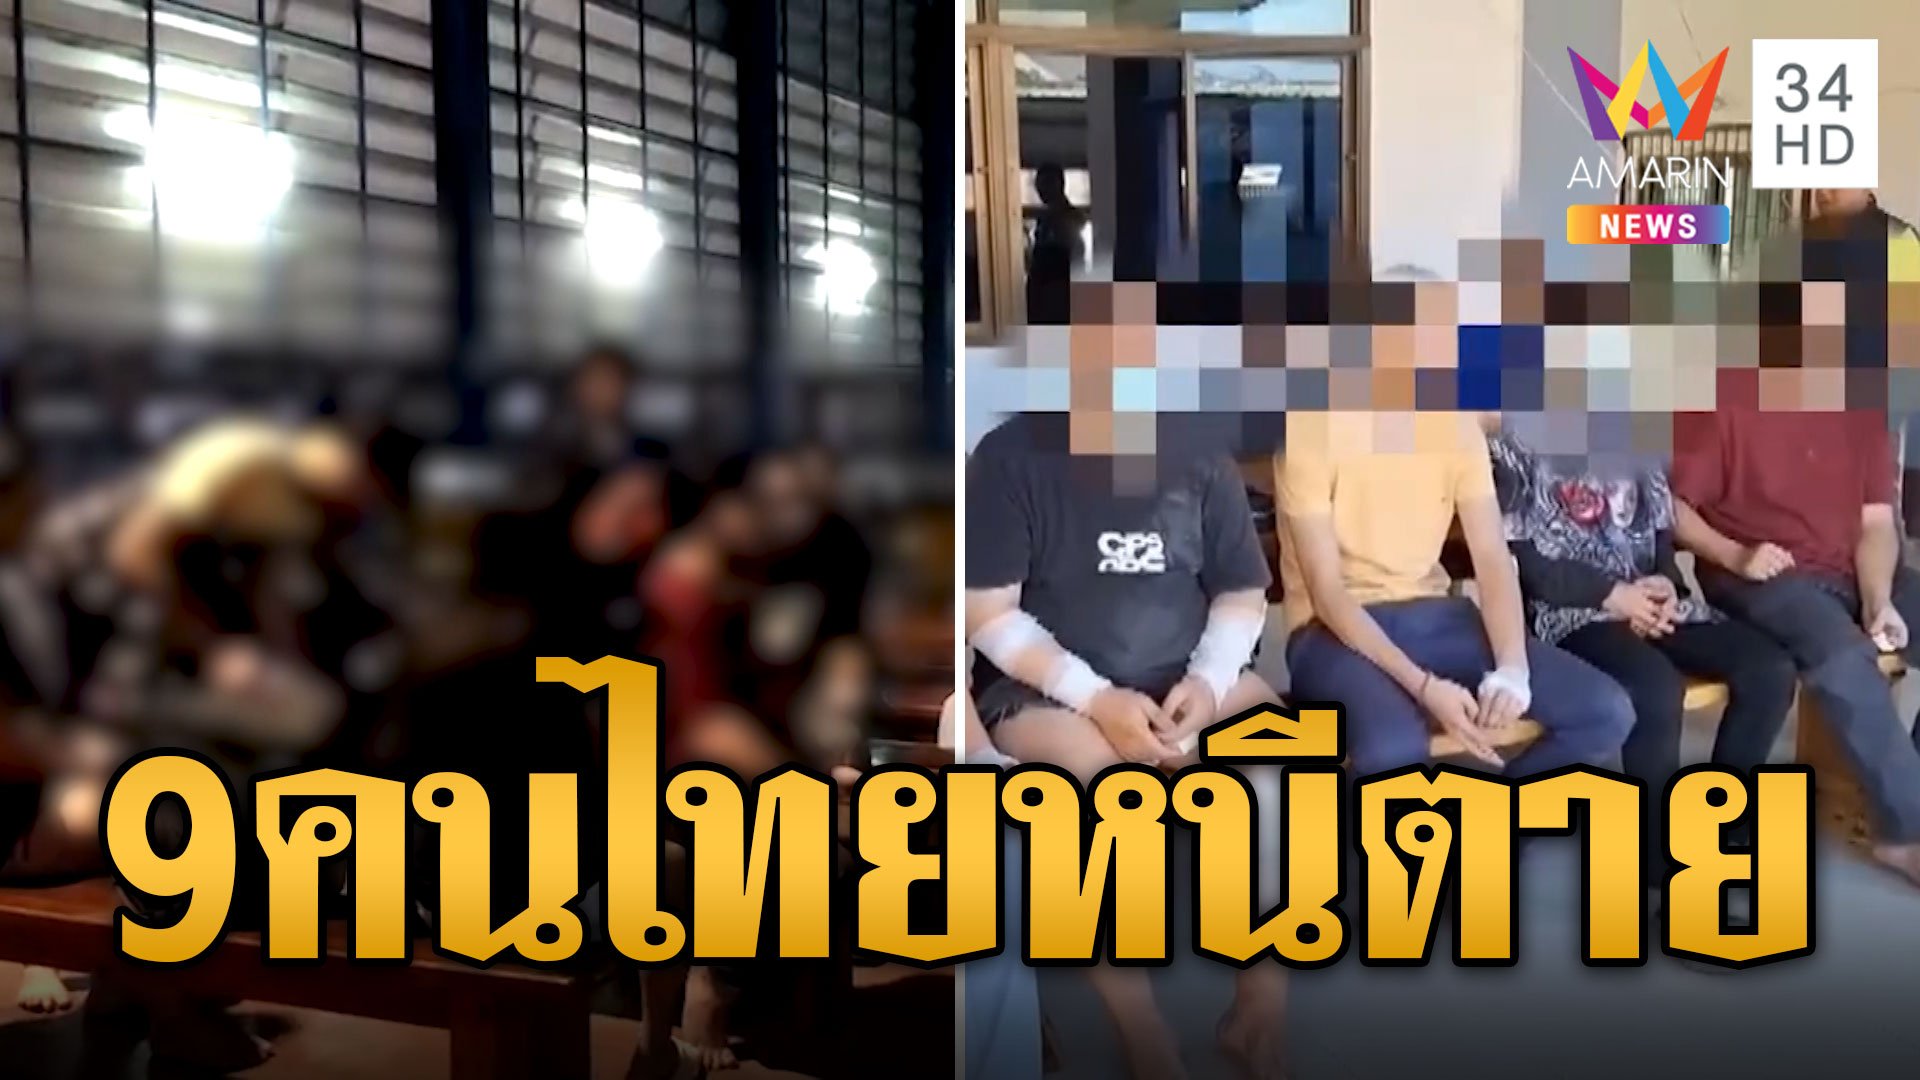 9 คนไทยวางแผนเผาตึกหนีตาย หลังถูกหลอกไปเป็นแก๊งคอลเซ็นเตอร์ | ข่าวอรุณอมรินทร์ | 20 ธ.ค. 66 | AMARIN TVHD34